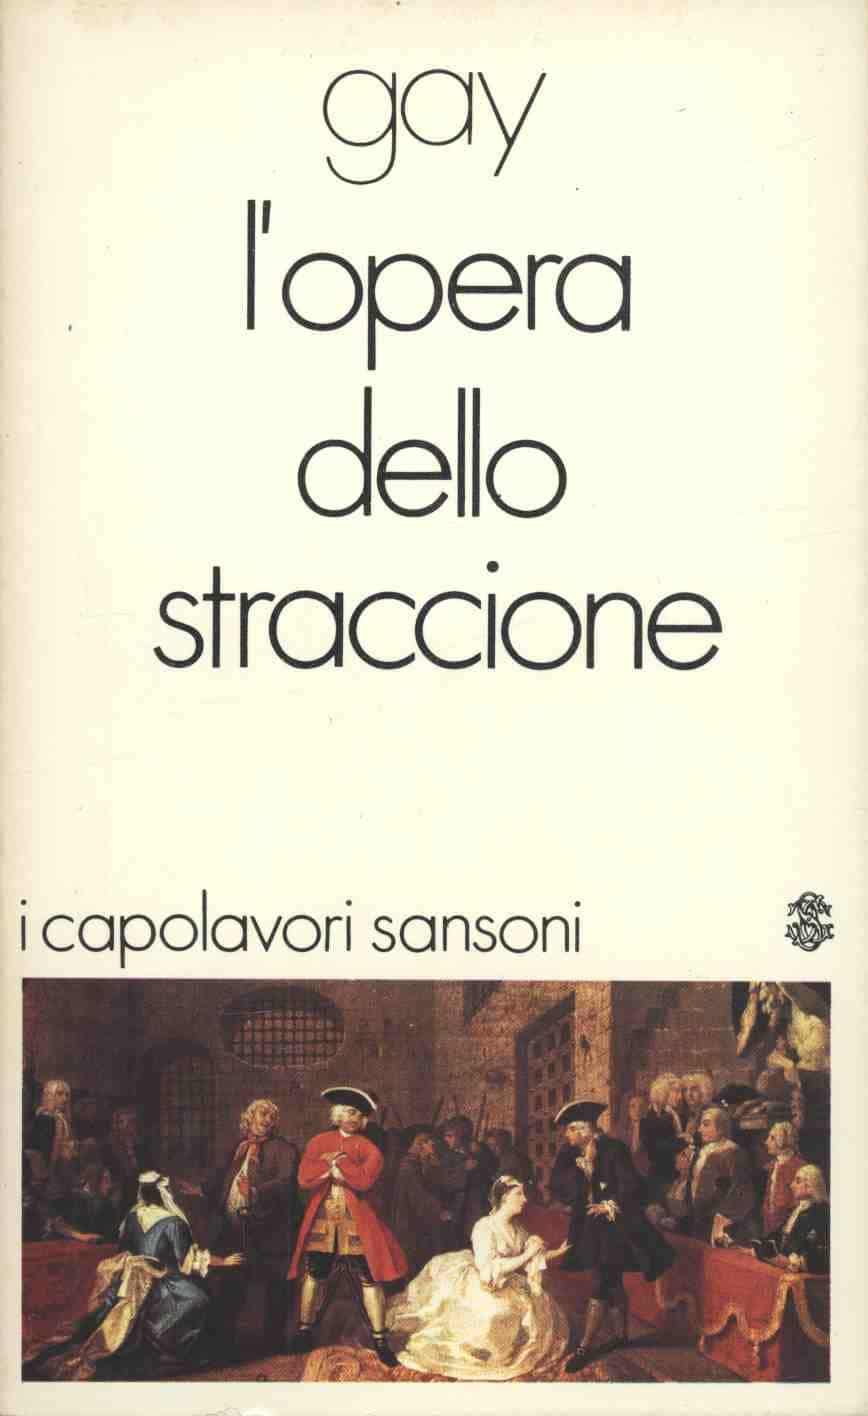 Un’edizione in italiano del “L’opera dello straccione” di John Gay